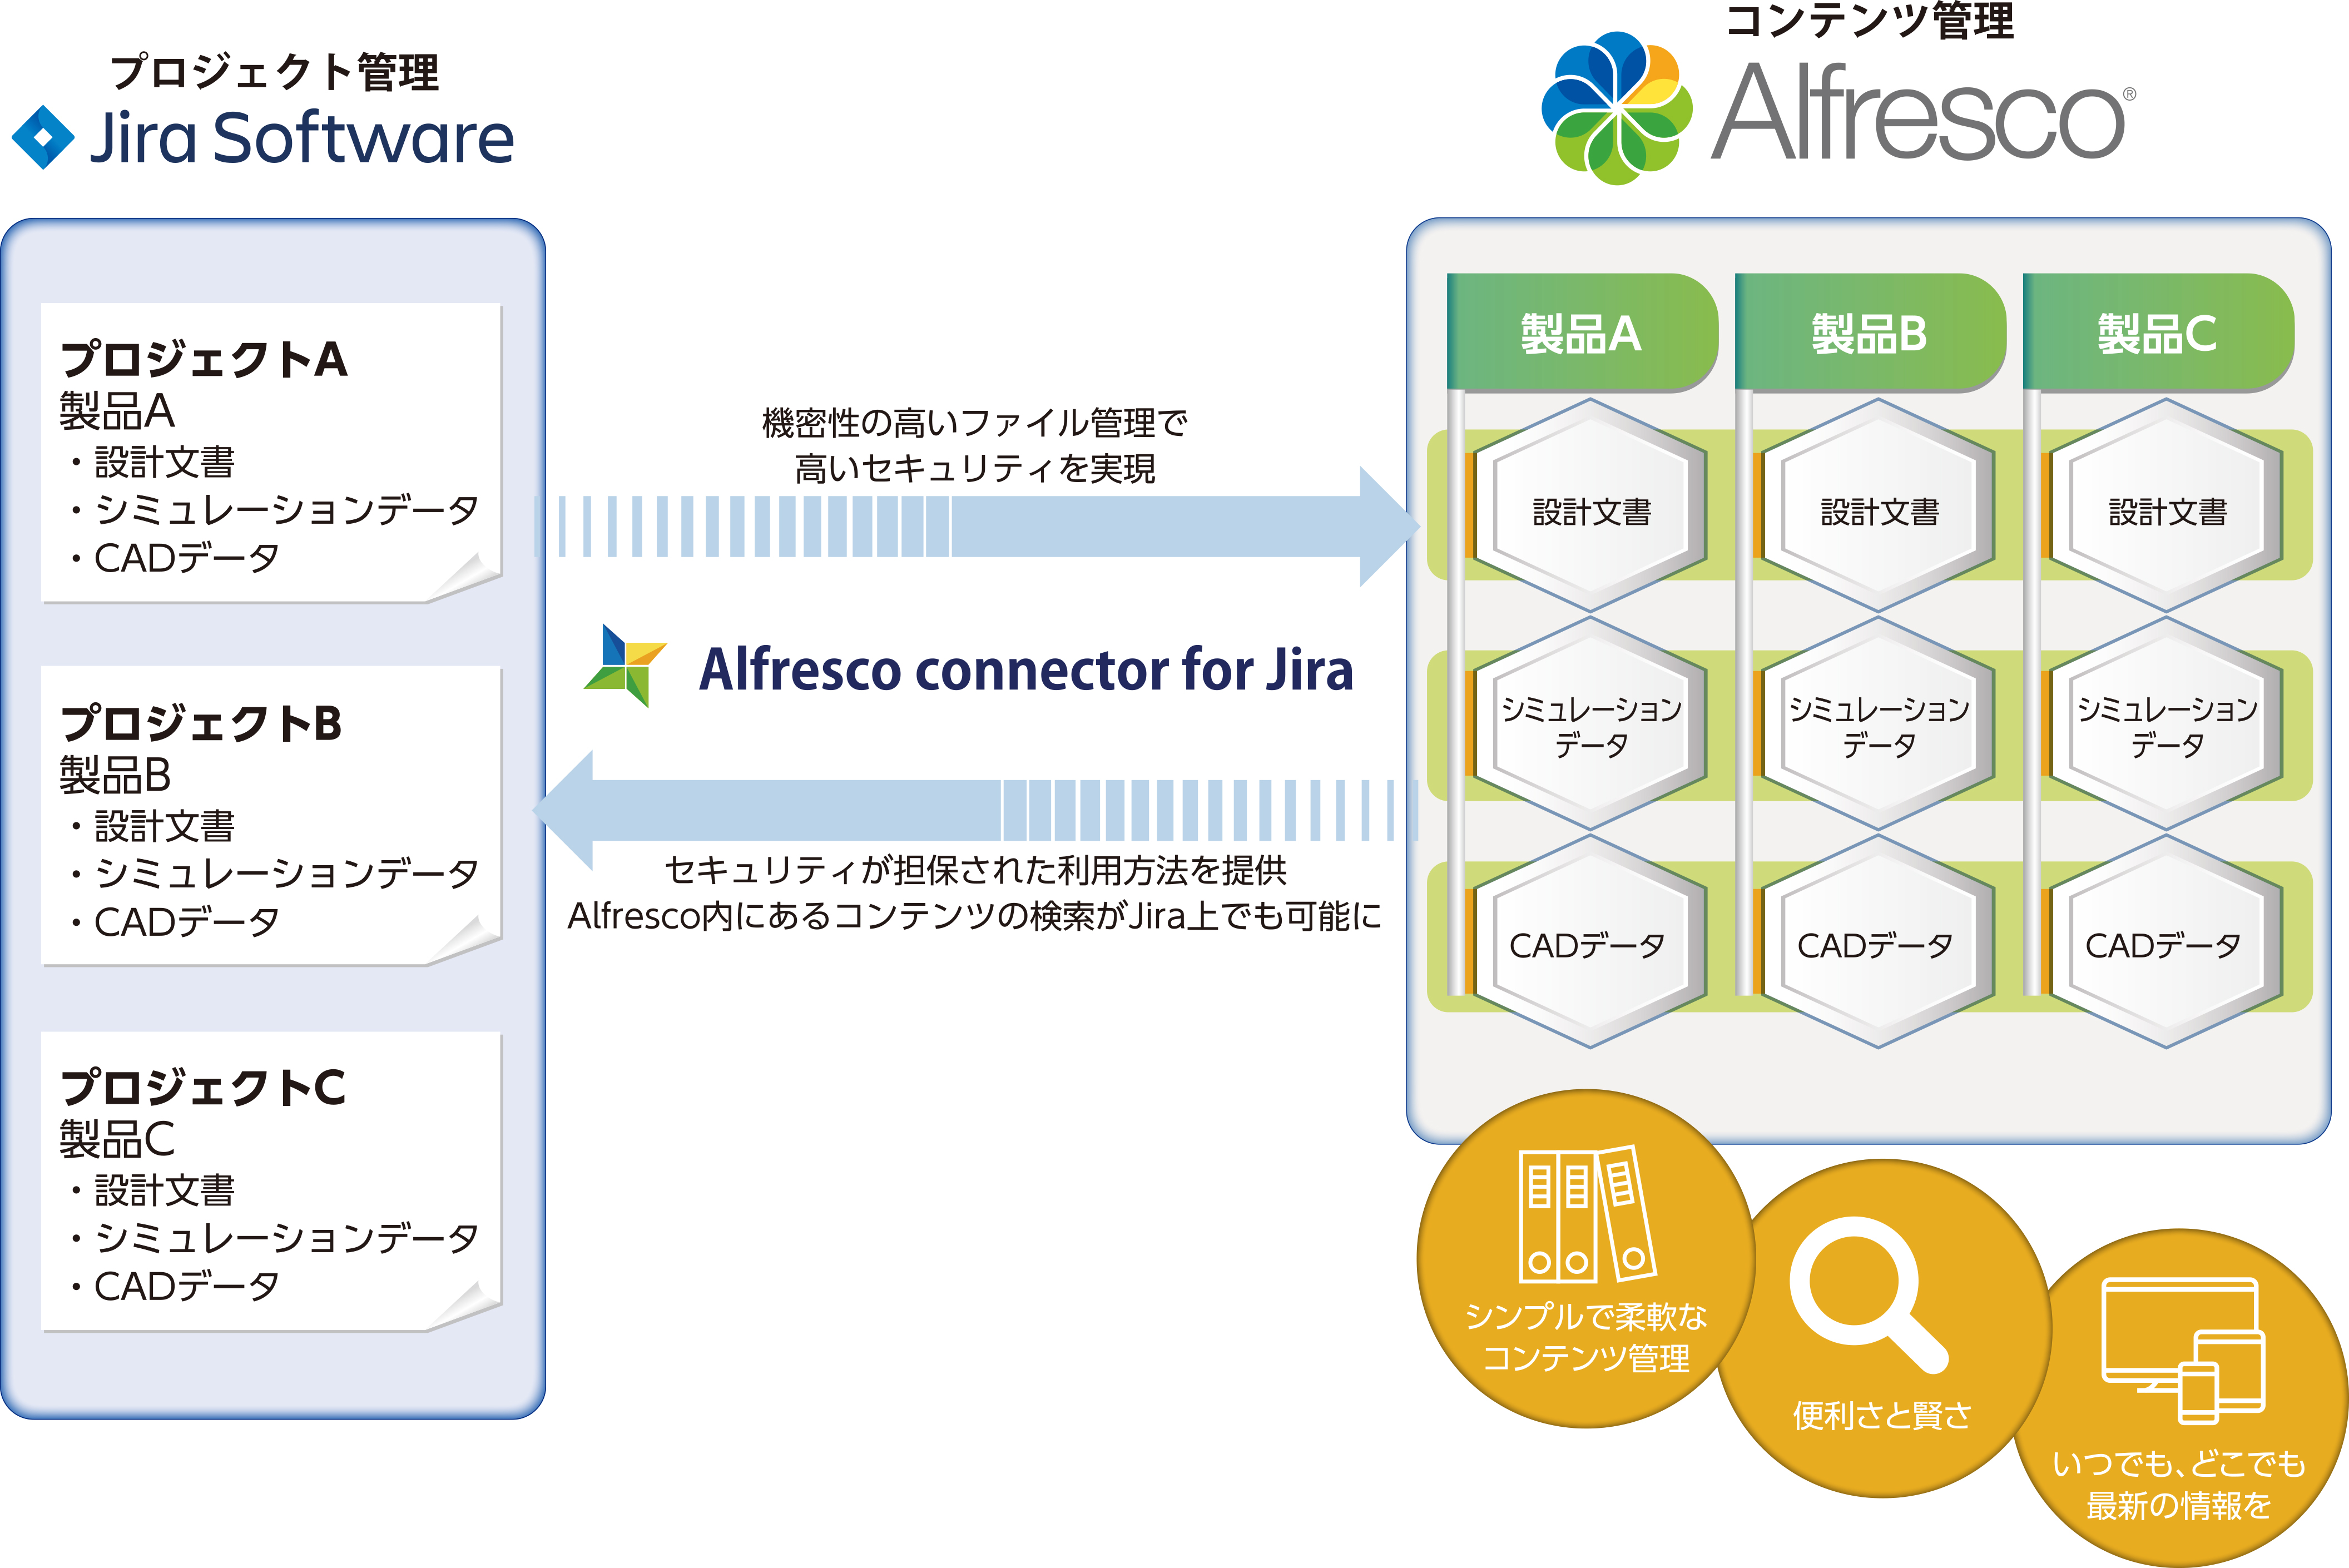 Alfresco Content ServicesとJira Softwareのコンテンツ管理とプロジェクト管理を組み合わせたソリューションの導入